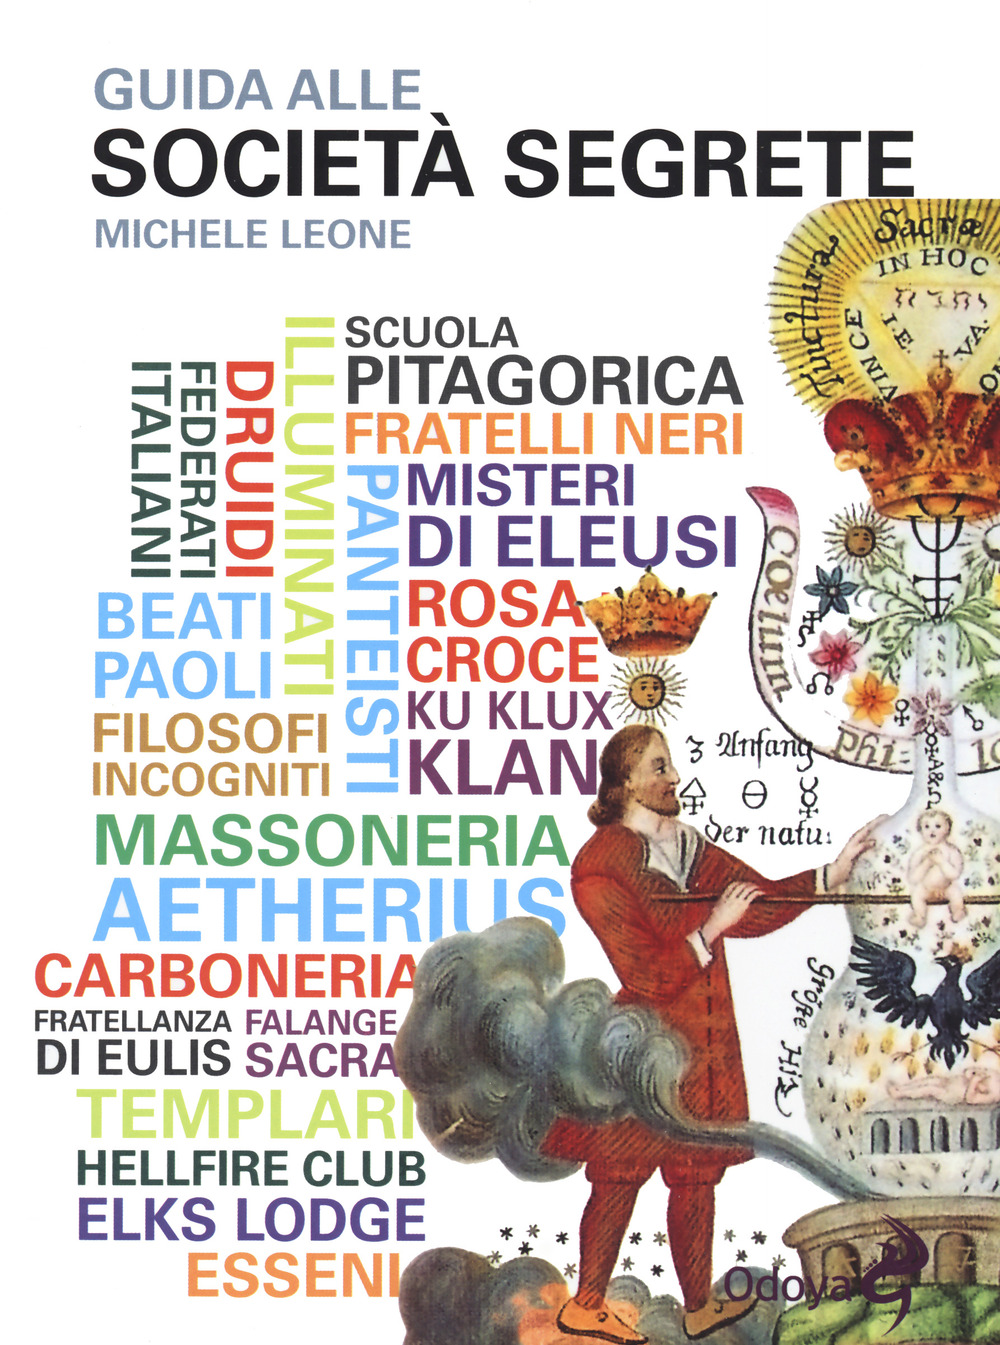 Libri Michele Leone - Guida Alle Societa Segrete NUOVO SIGILLATO, EDIZIONE DEL 02/09/2021 SUBITO DISPONIBILE